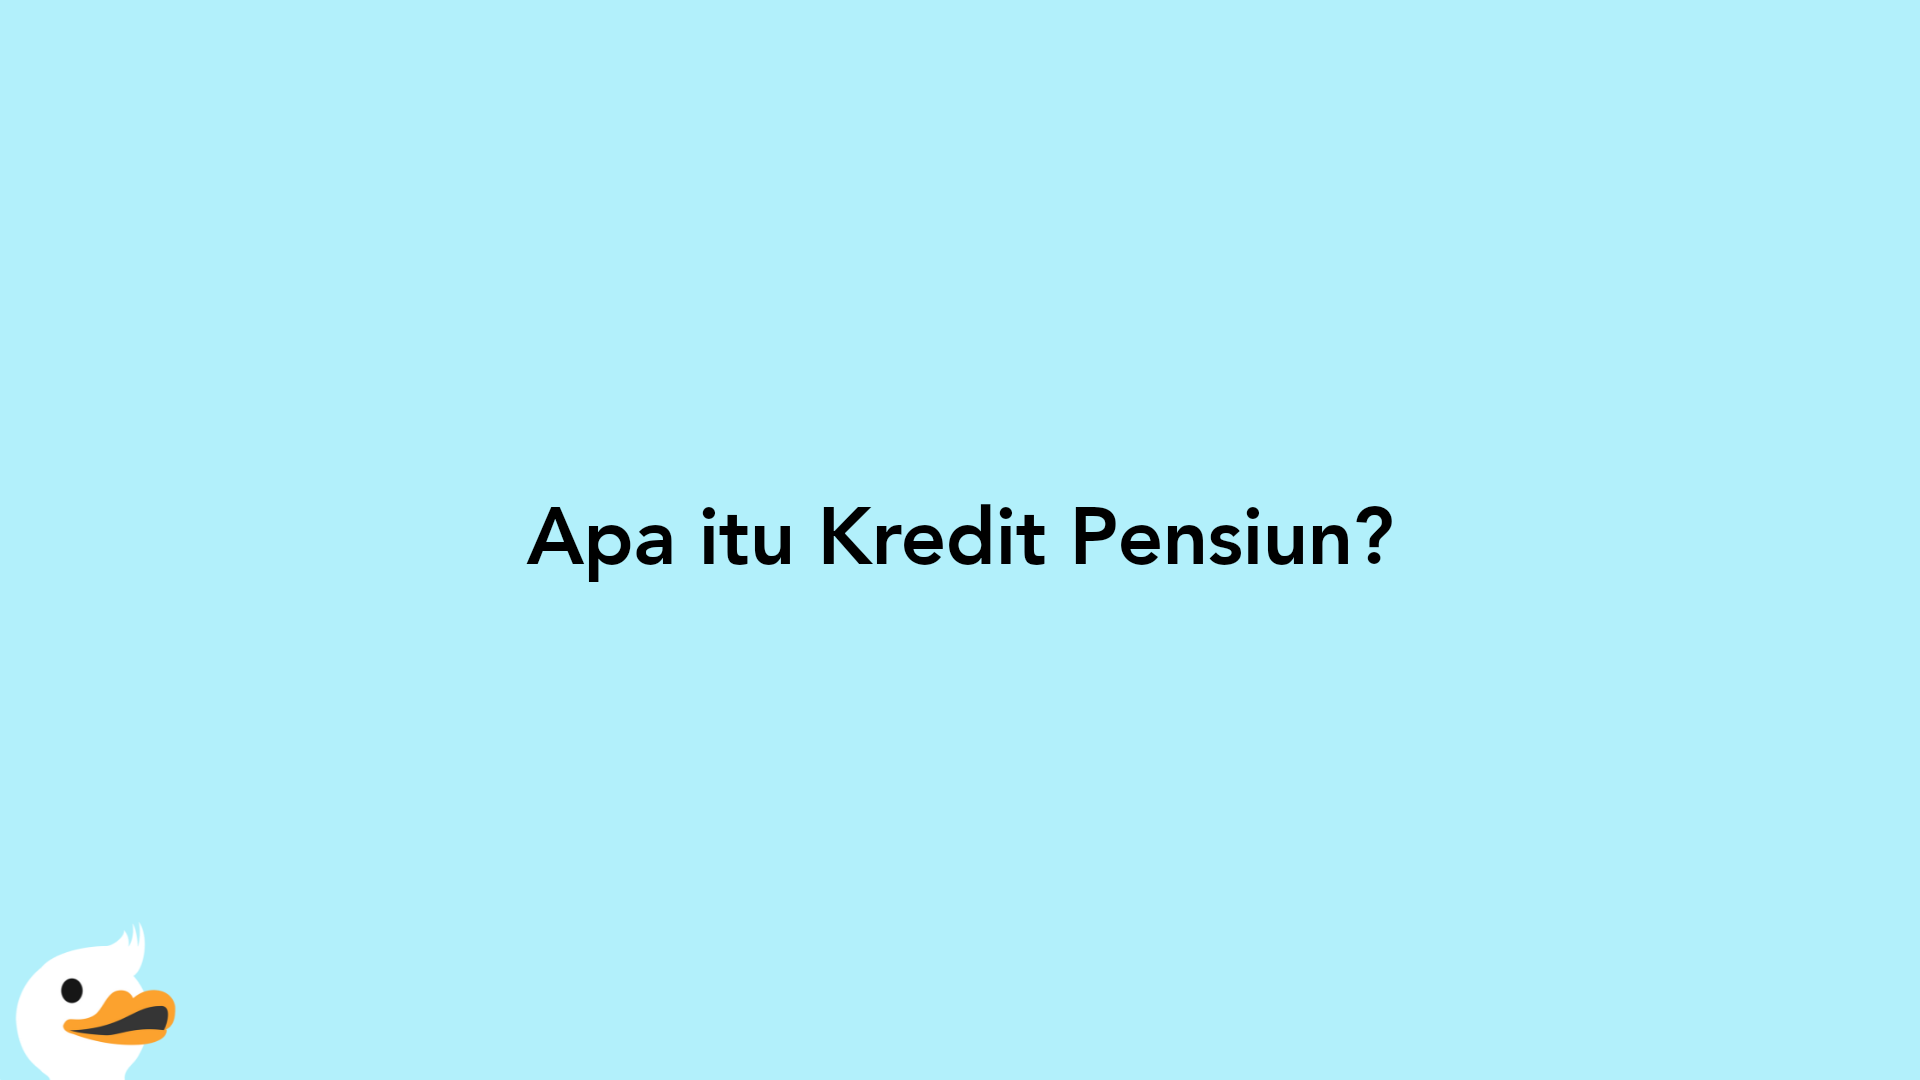 Apa itu Kredit Pensiun?